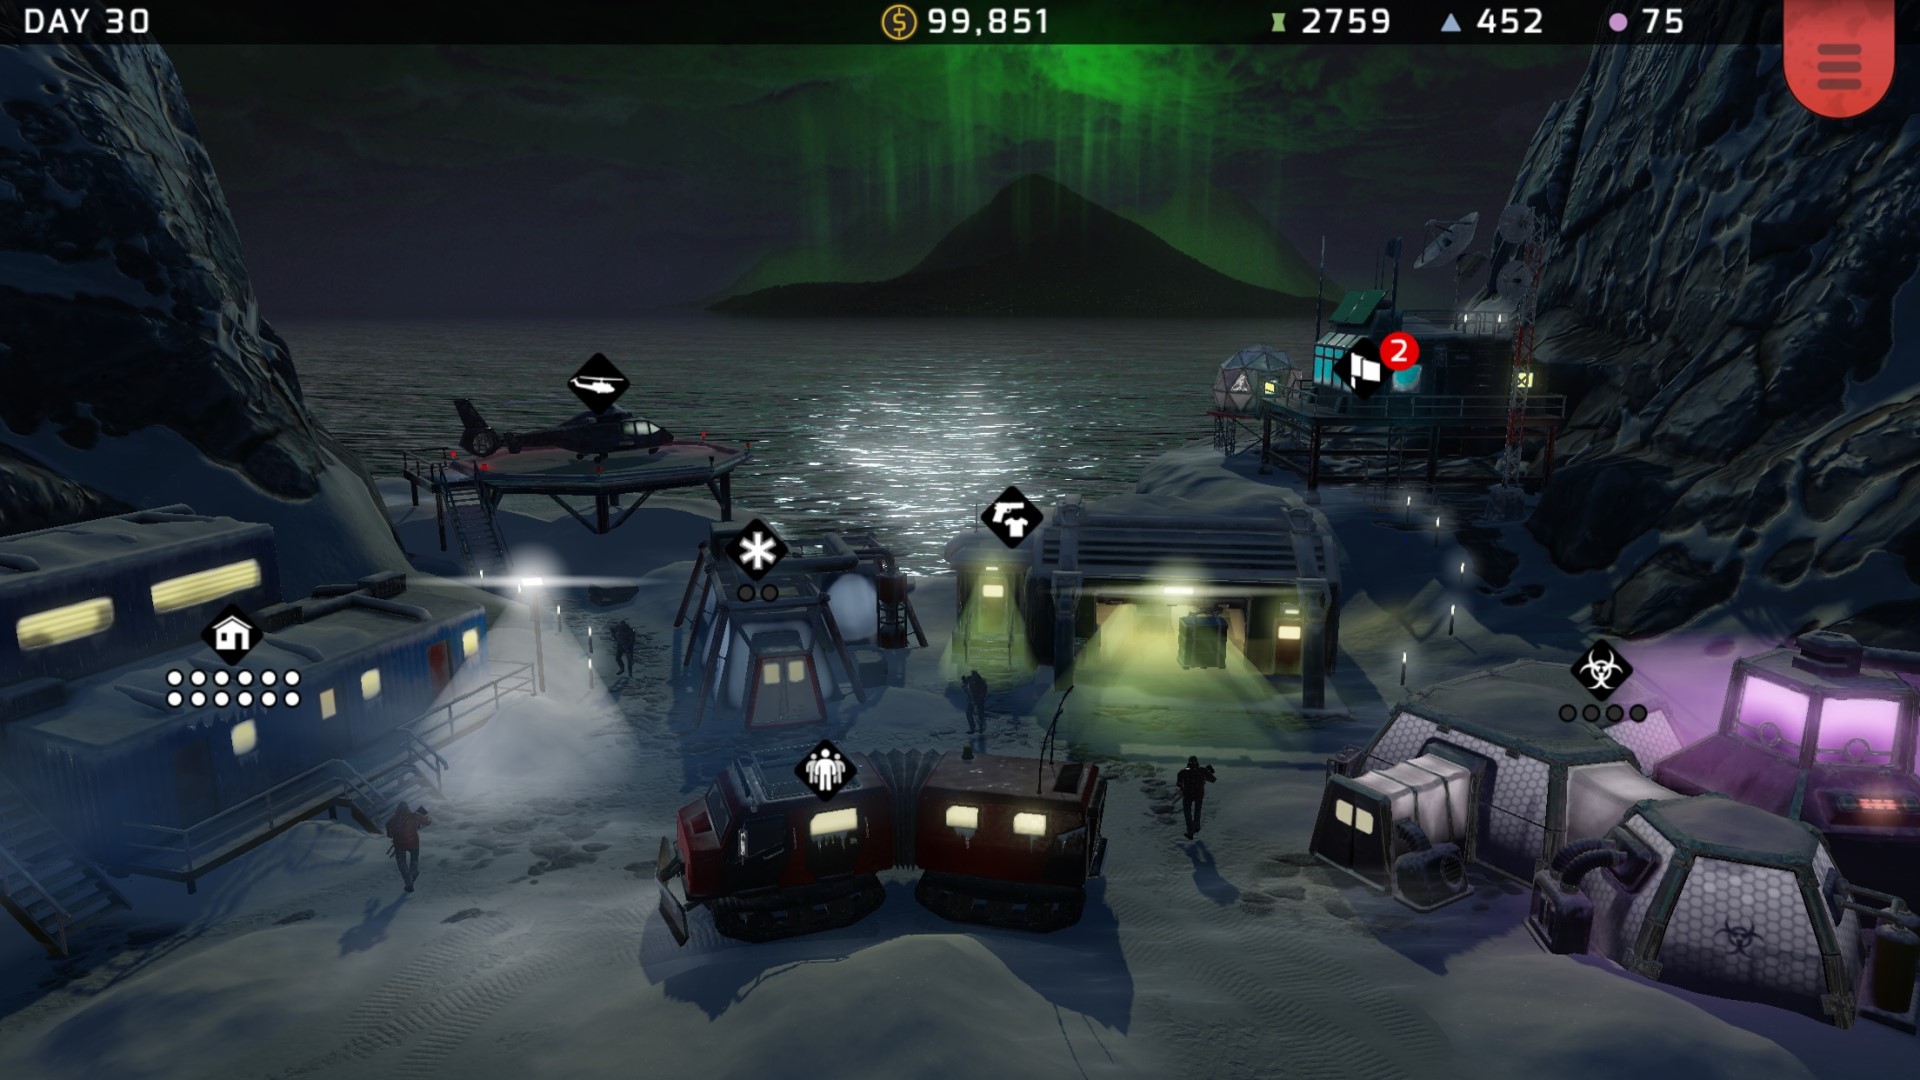 Trò chơi chiến lược di động tốt nhất: Chiến thuật Xenowerk. Hình ảnh cho thấy một lựa chọn các phương tiện quân sự ngồi bên đại dương vào ban đêm